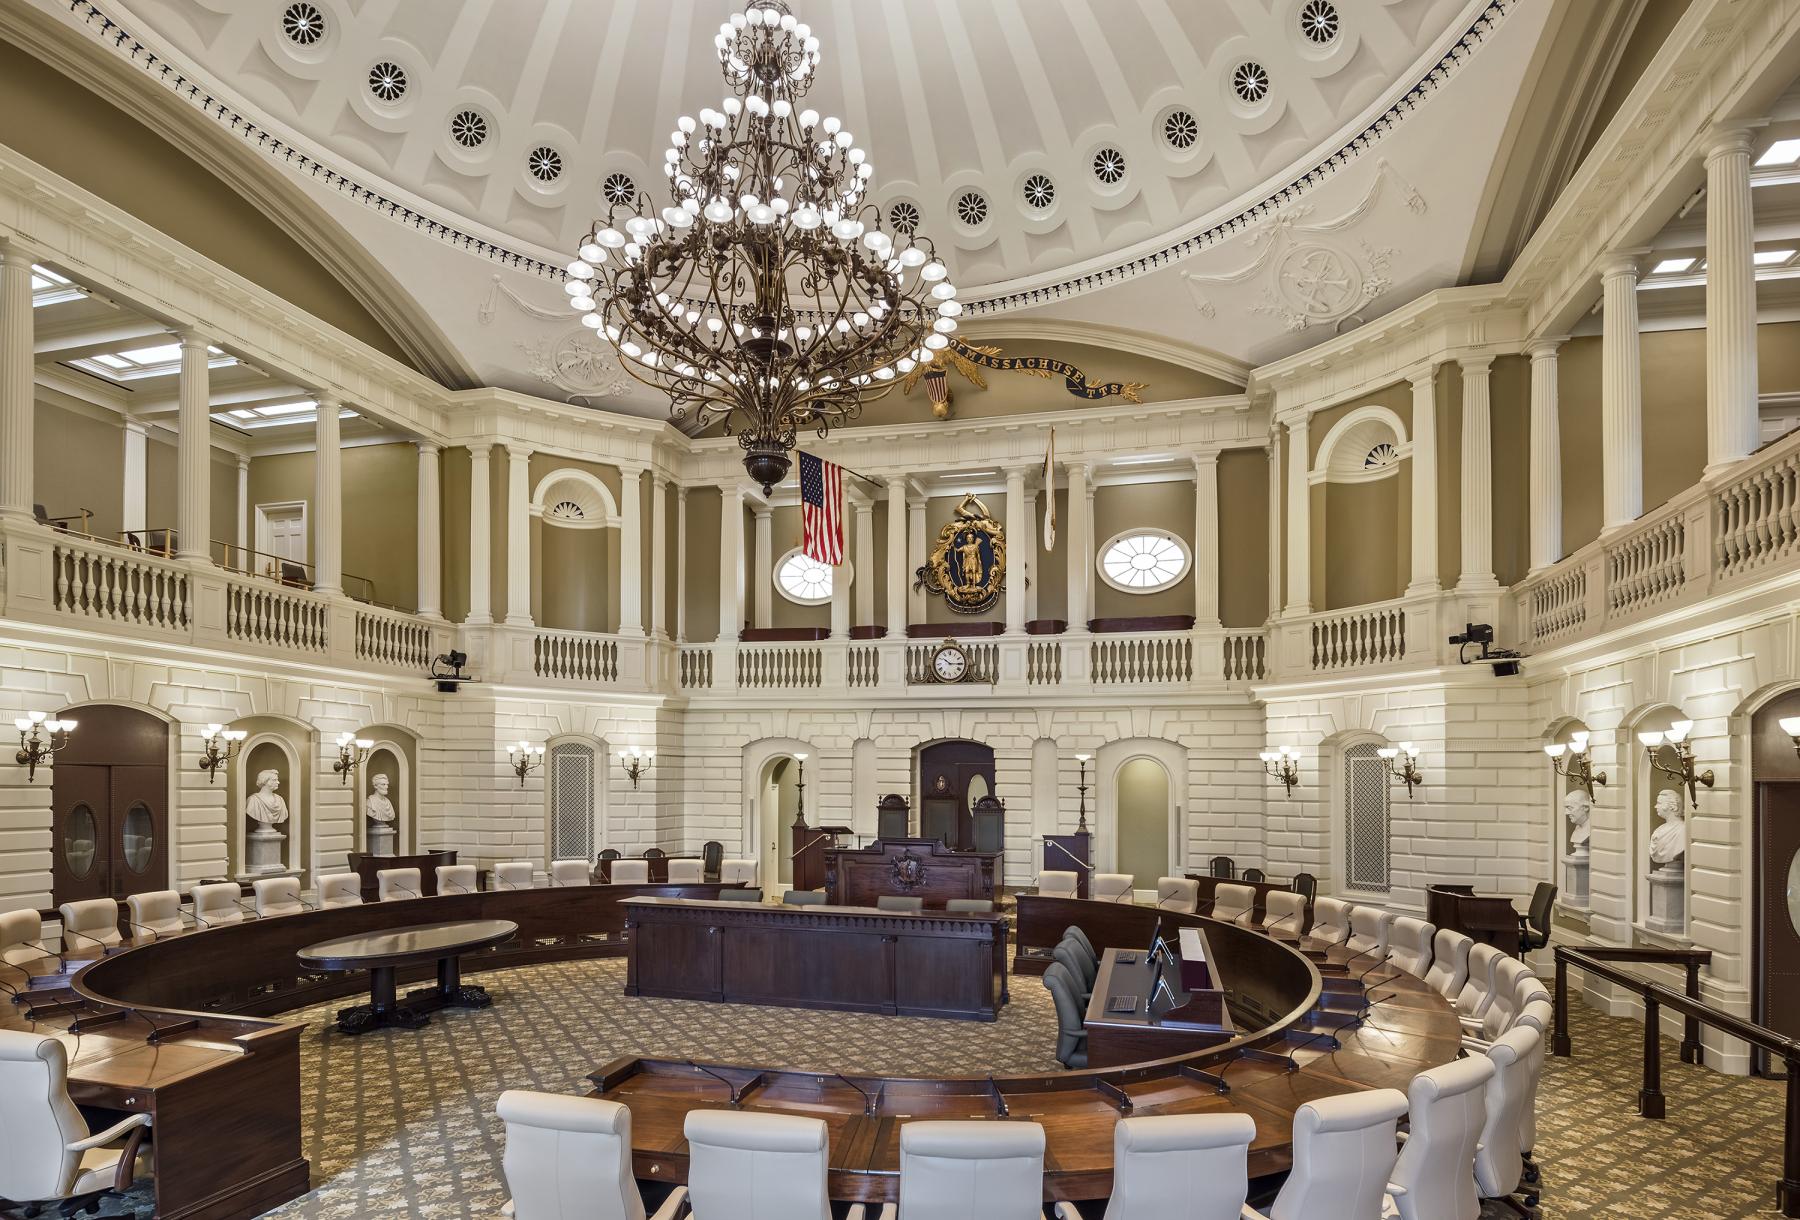 Senate Chamber, After